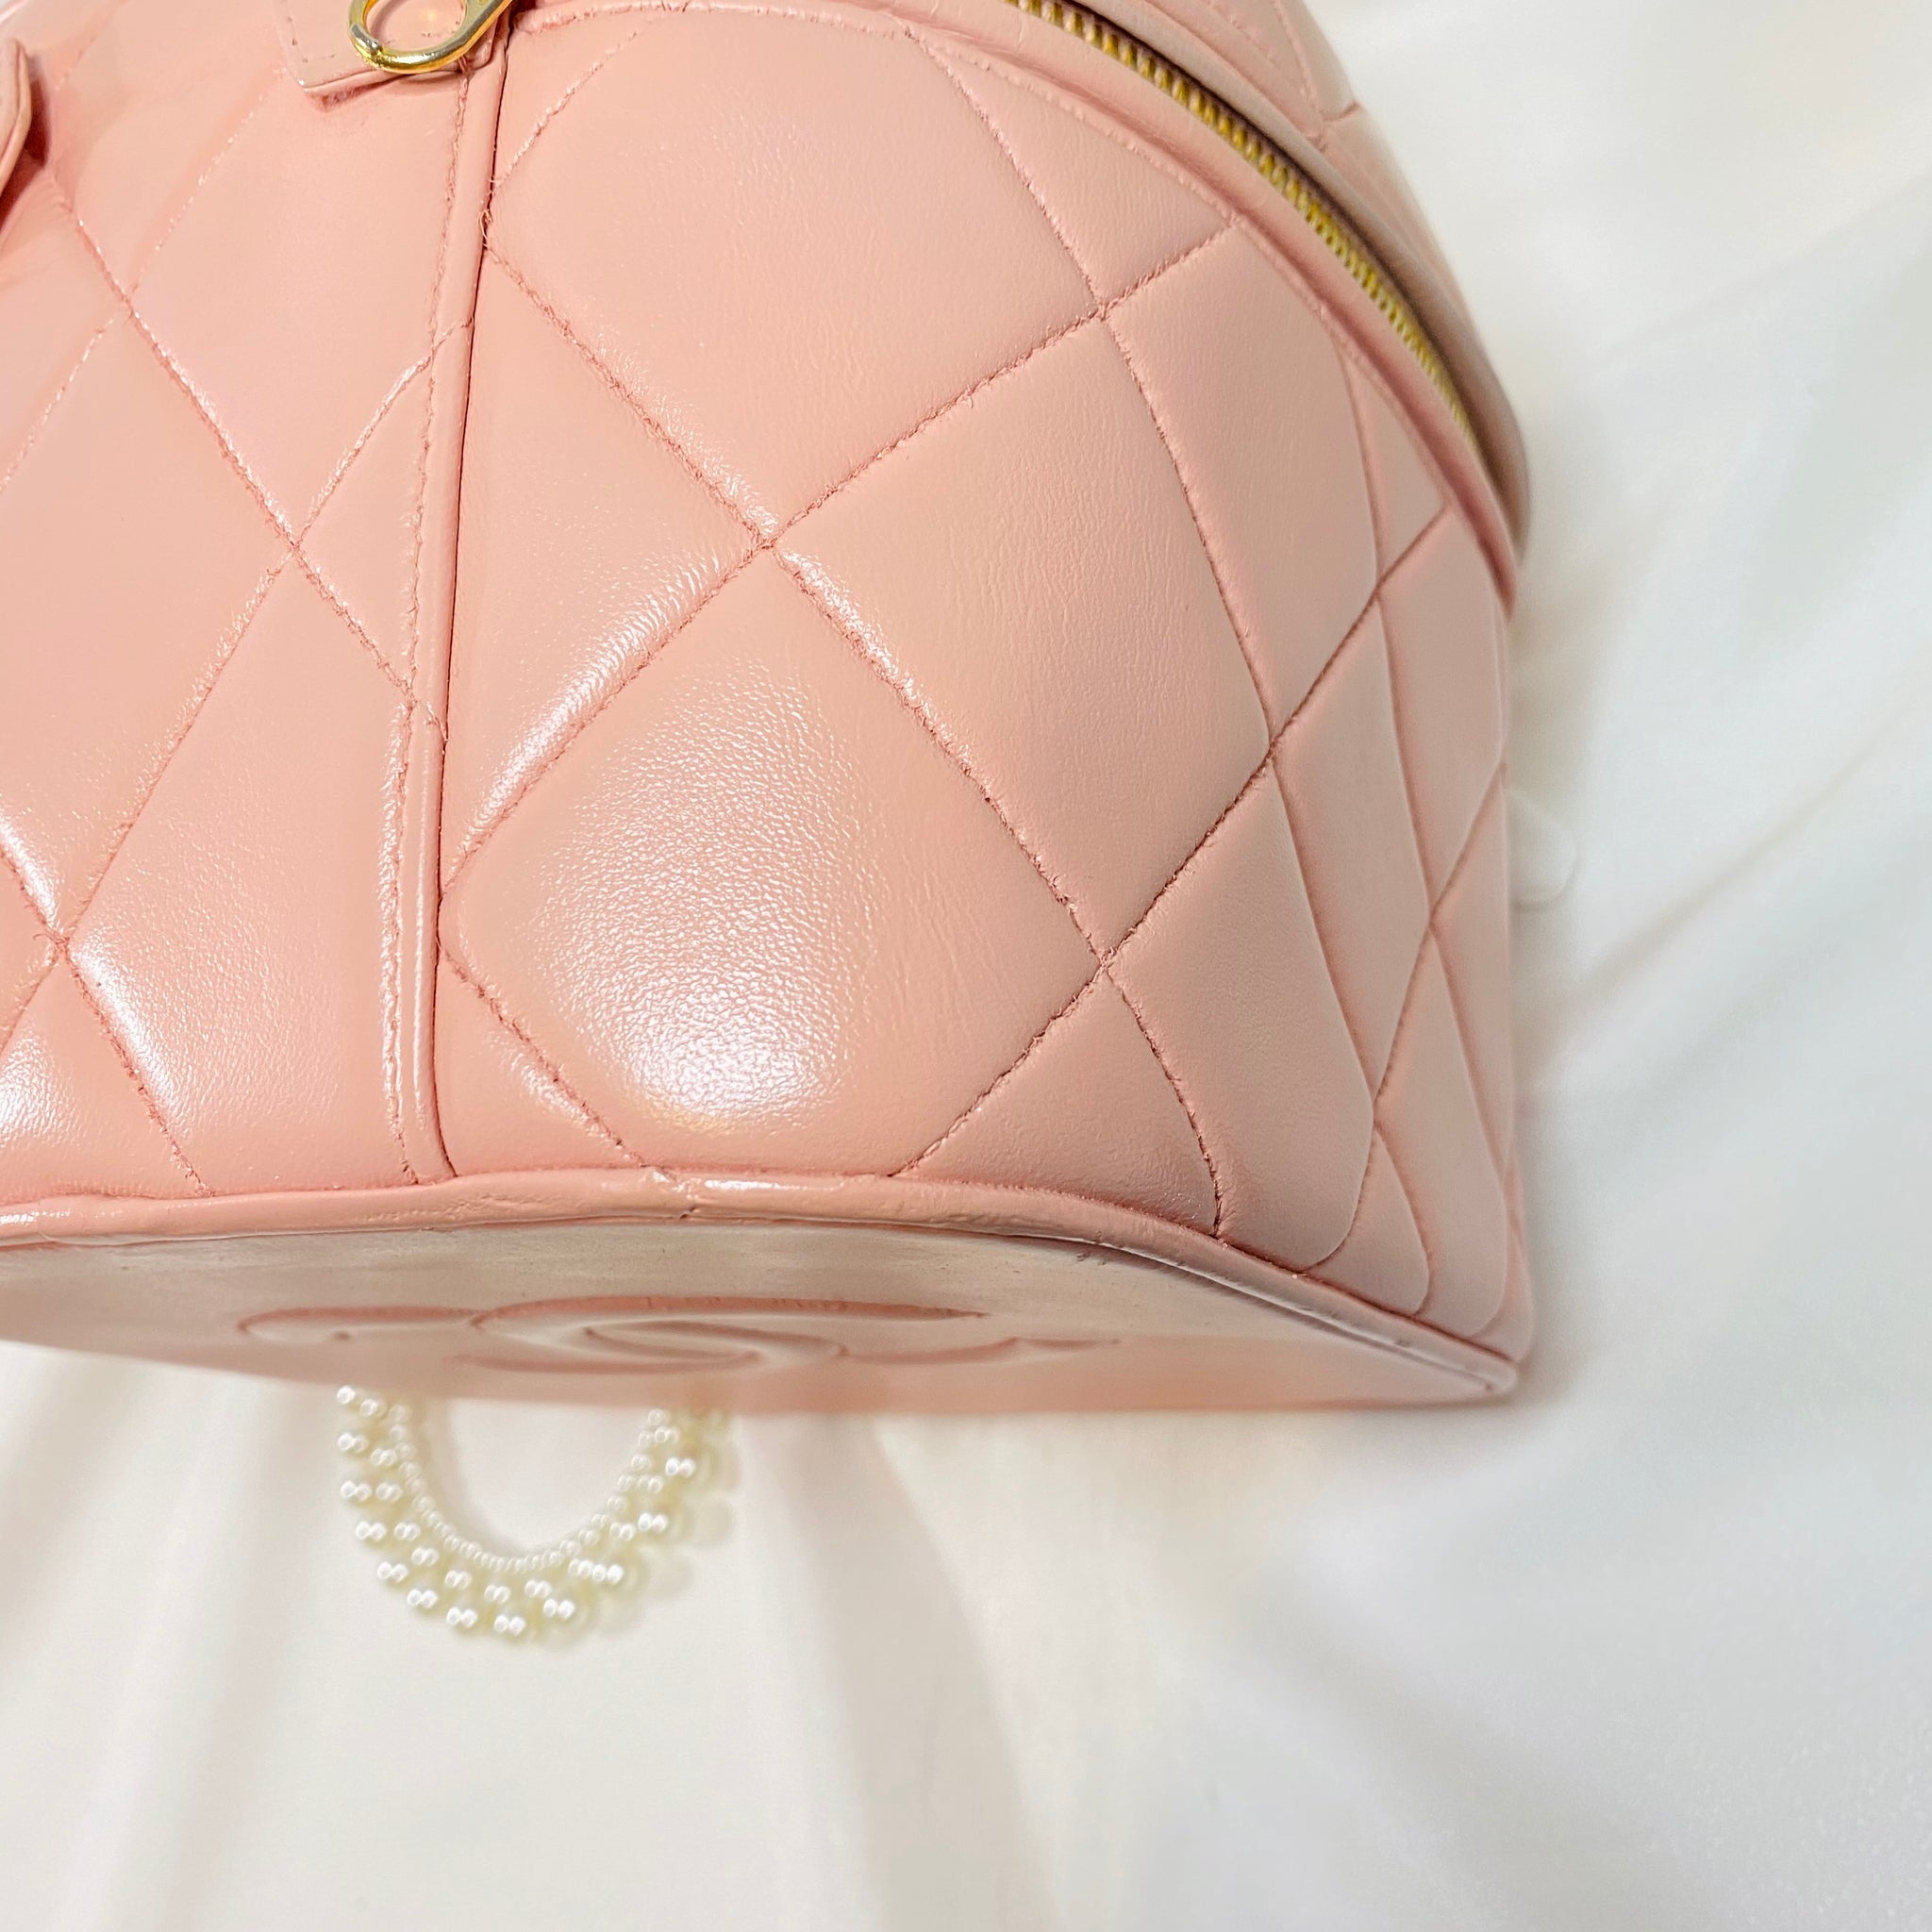 No.2188-Chanel Vintage Vanity Case Handle Bag – Gallery Luxe